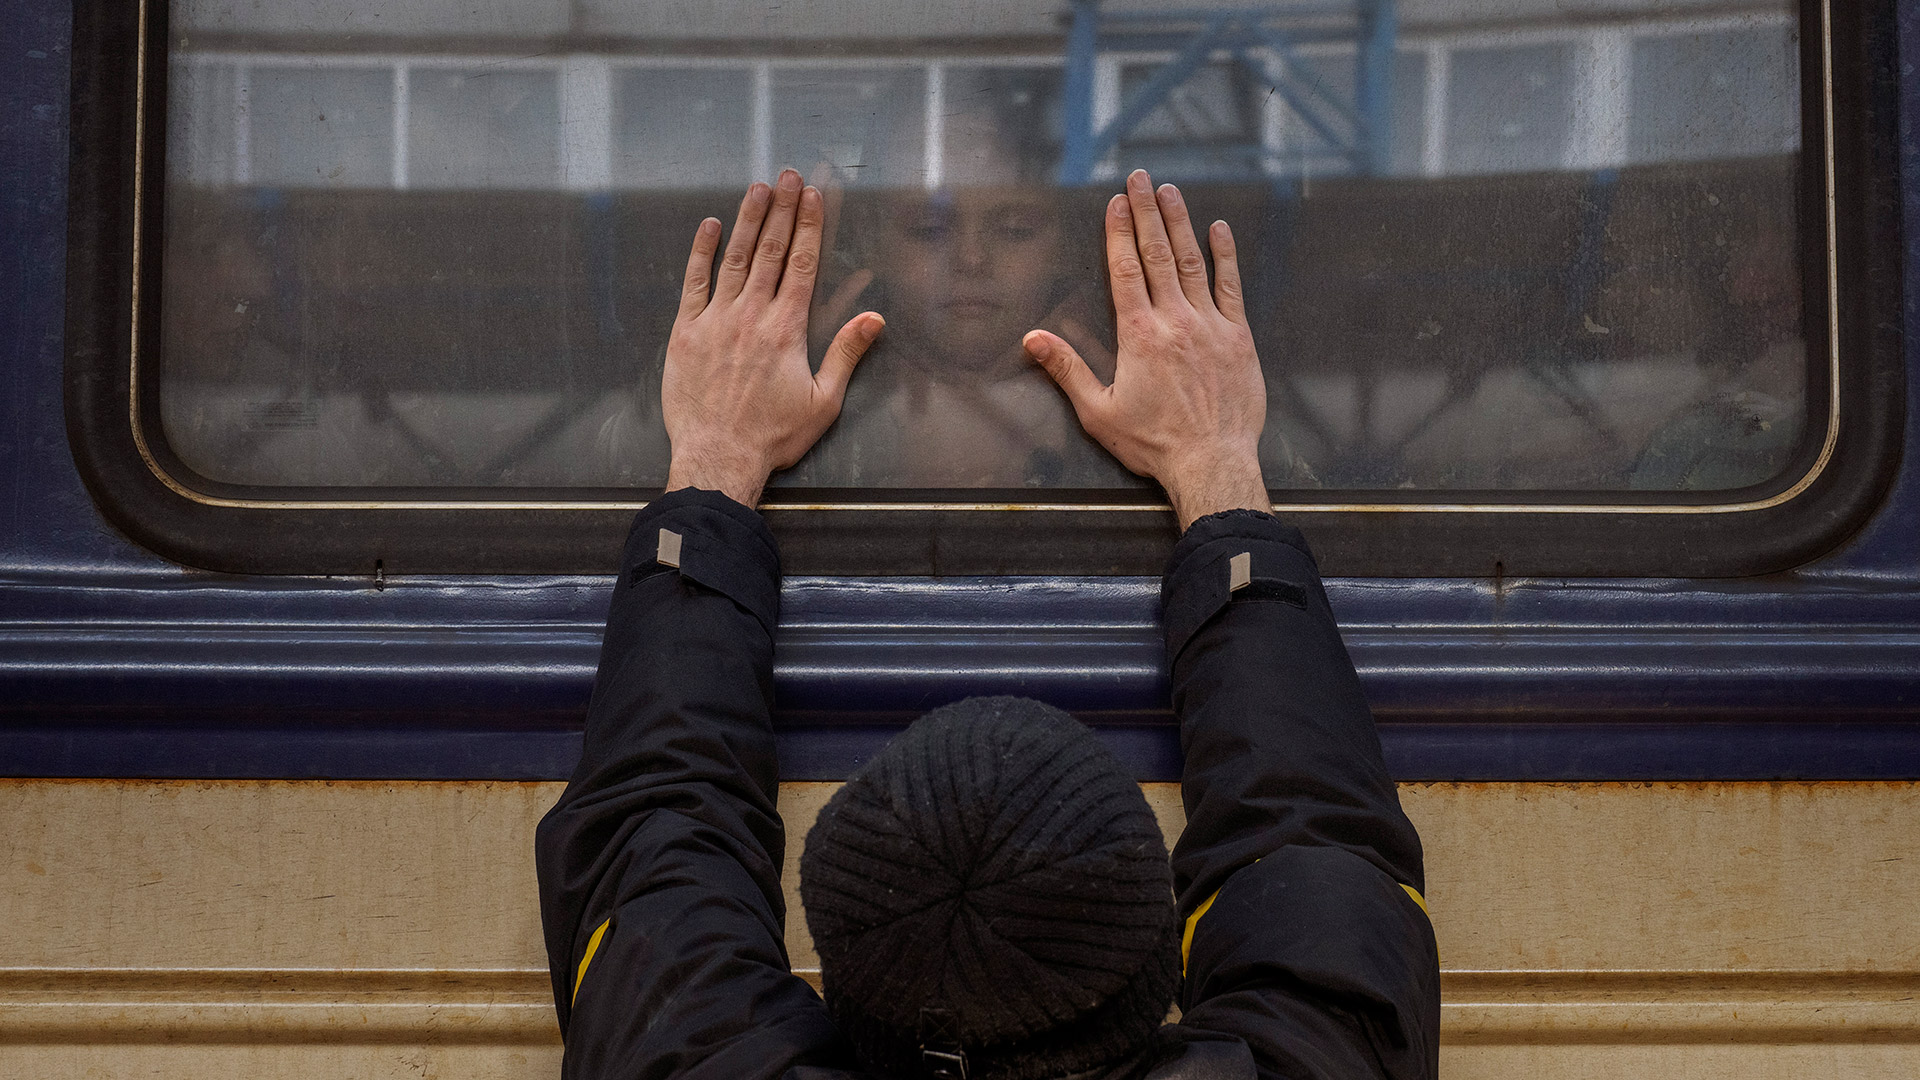 Aleksander, de 41 años, apoya las palmas de sus manos contra la ventana mientras se despide de su hija Anna, de 5 años, que se encuentra a bordo de un tren a Lviv en la estación de Kiev, Ucrania, el viernes 4 de marzo de 2022. Aleksander tiene que quedarse para combatir en la guerra, mientras su familia sale del país para buscar refugio  (AP Photo/Emilio Morenatti)